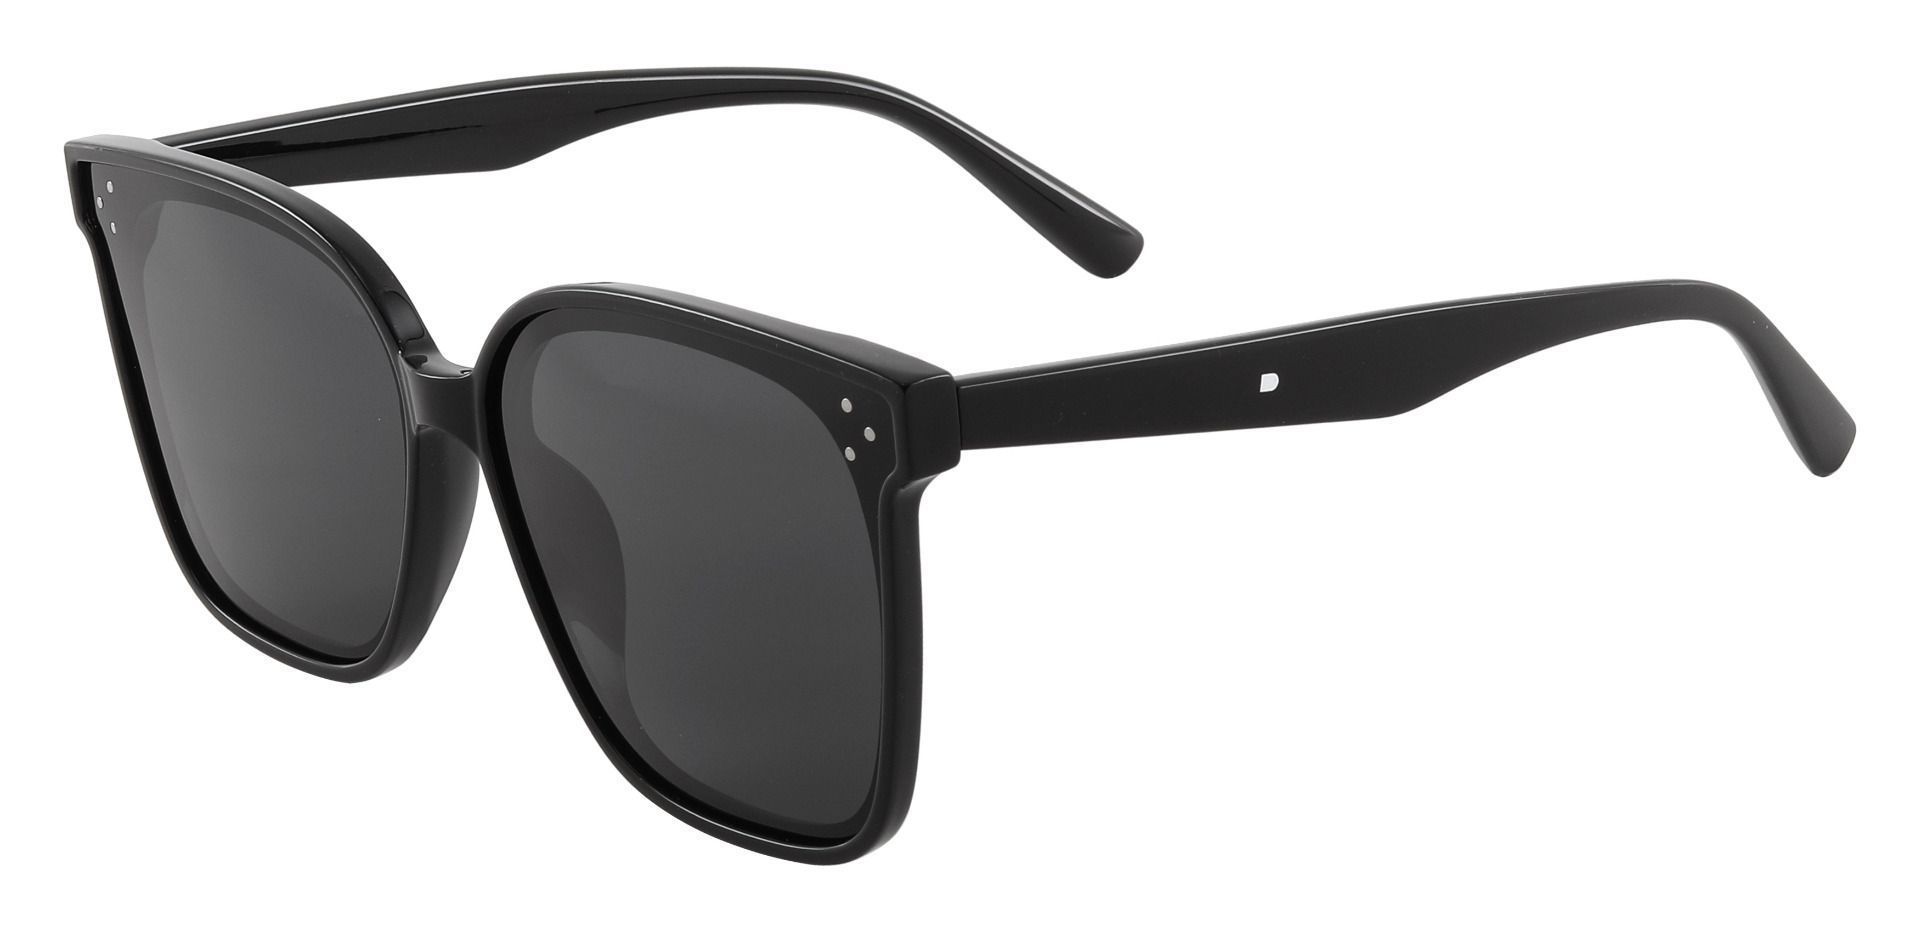 Anya Square Black Non-Rx Sunglasses